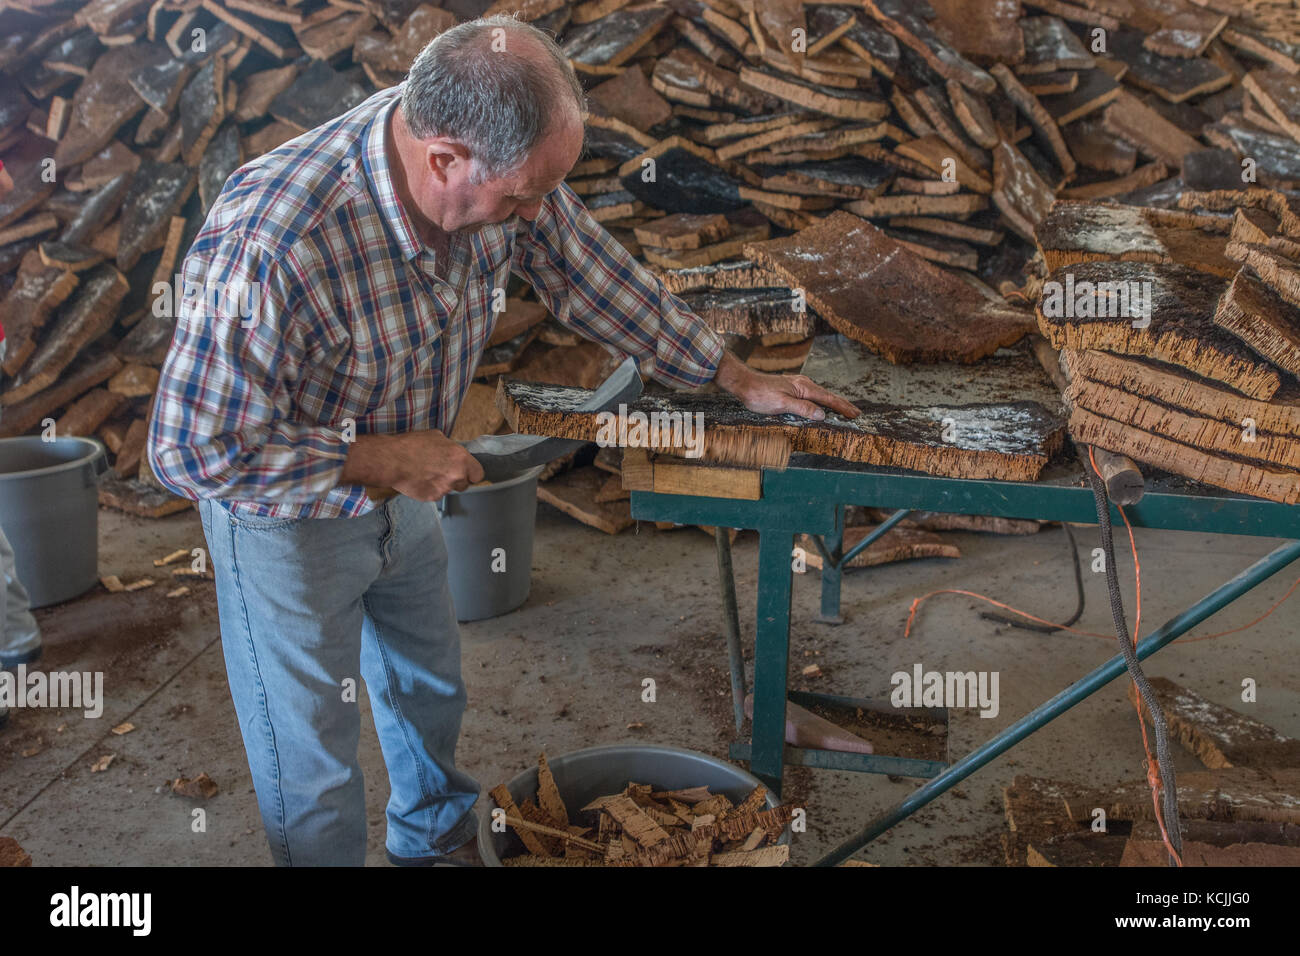 cork production at Azaruja, Alentejo, Portugal Stock Photo